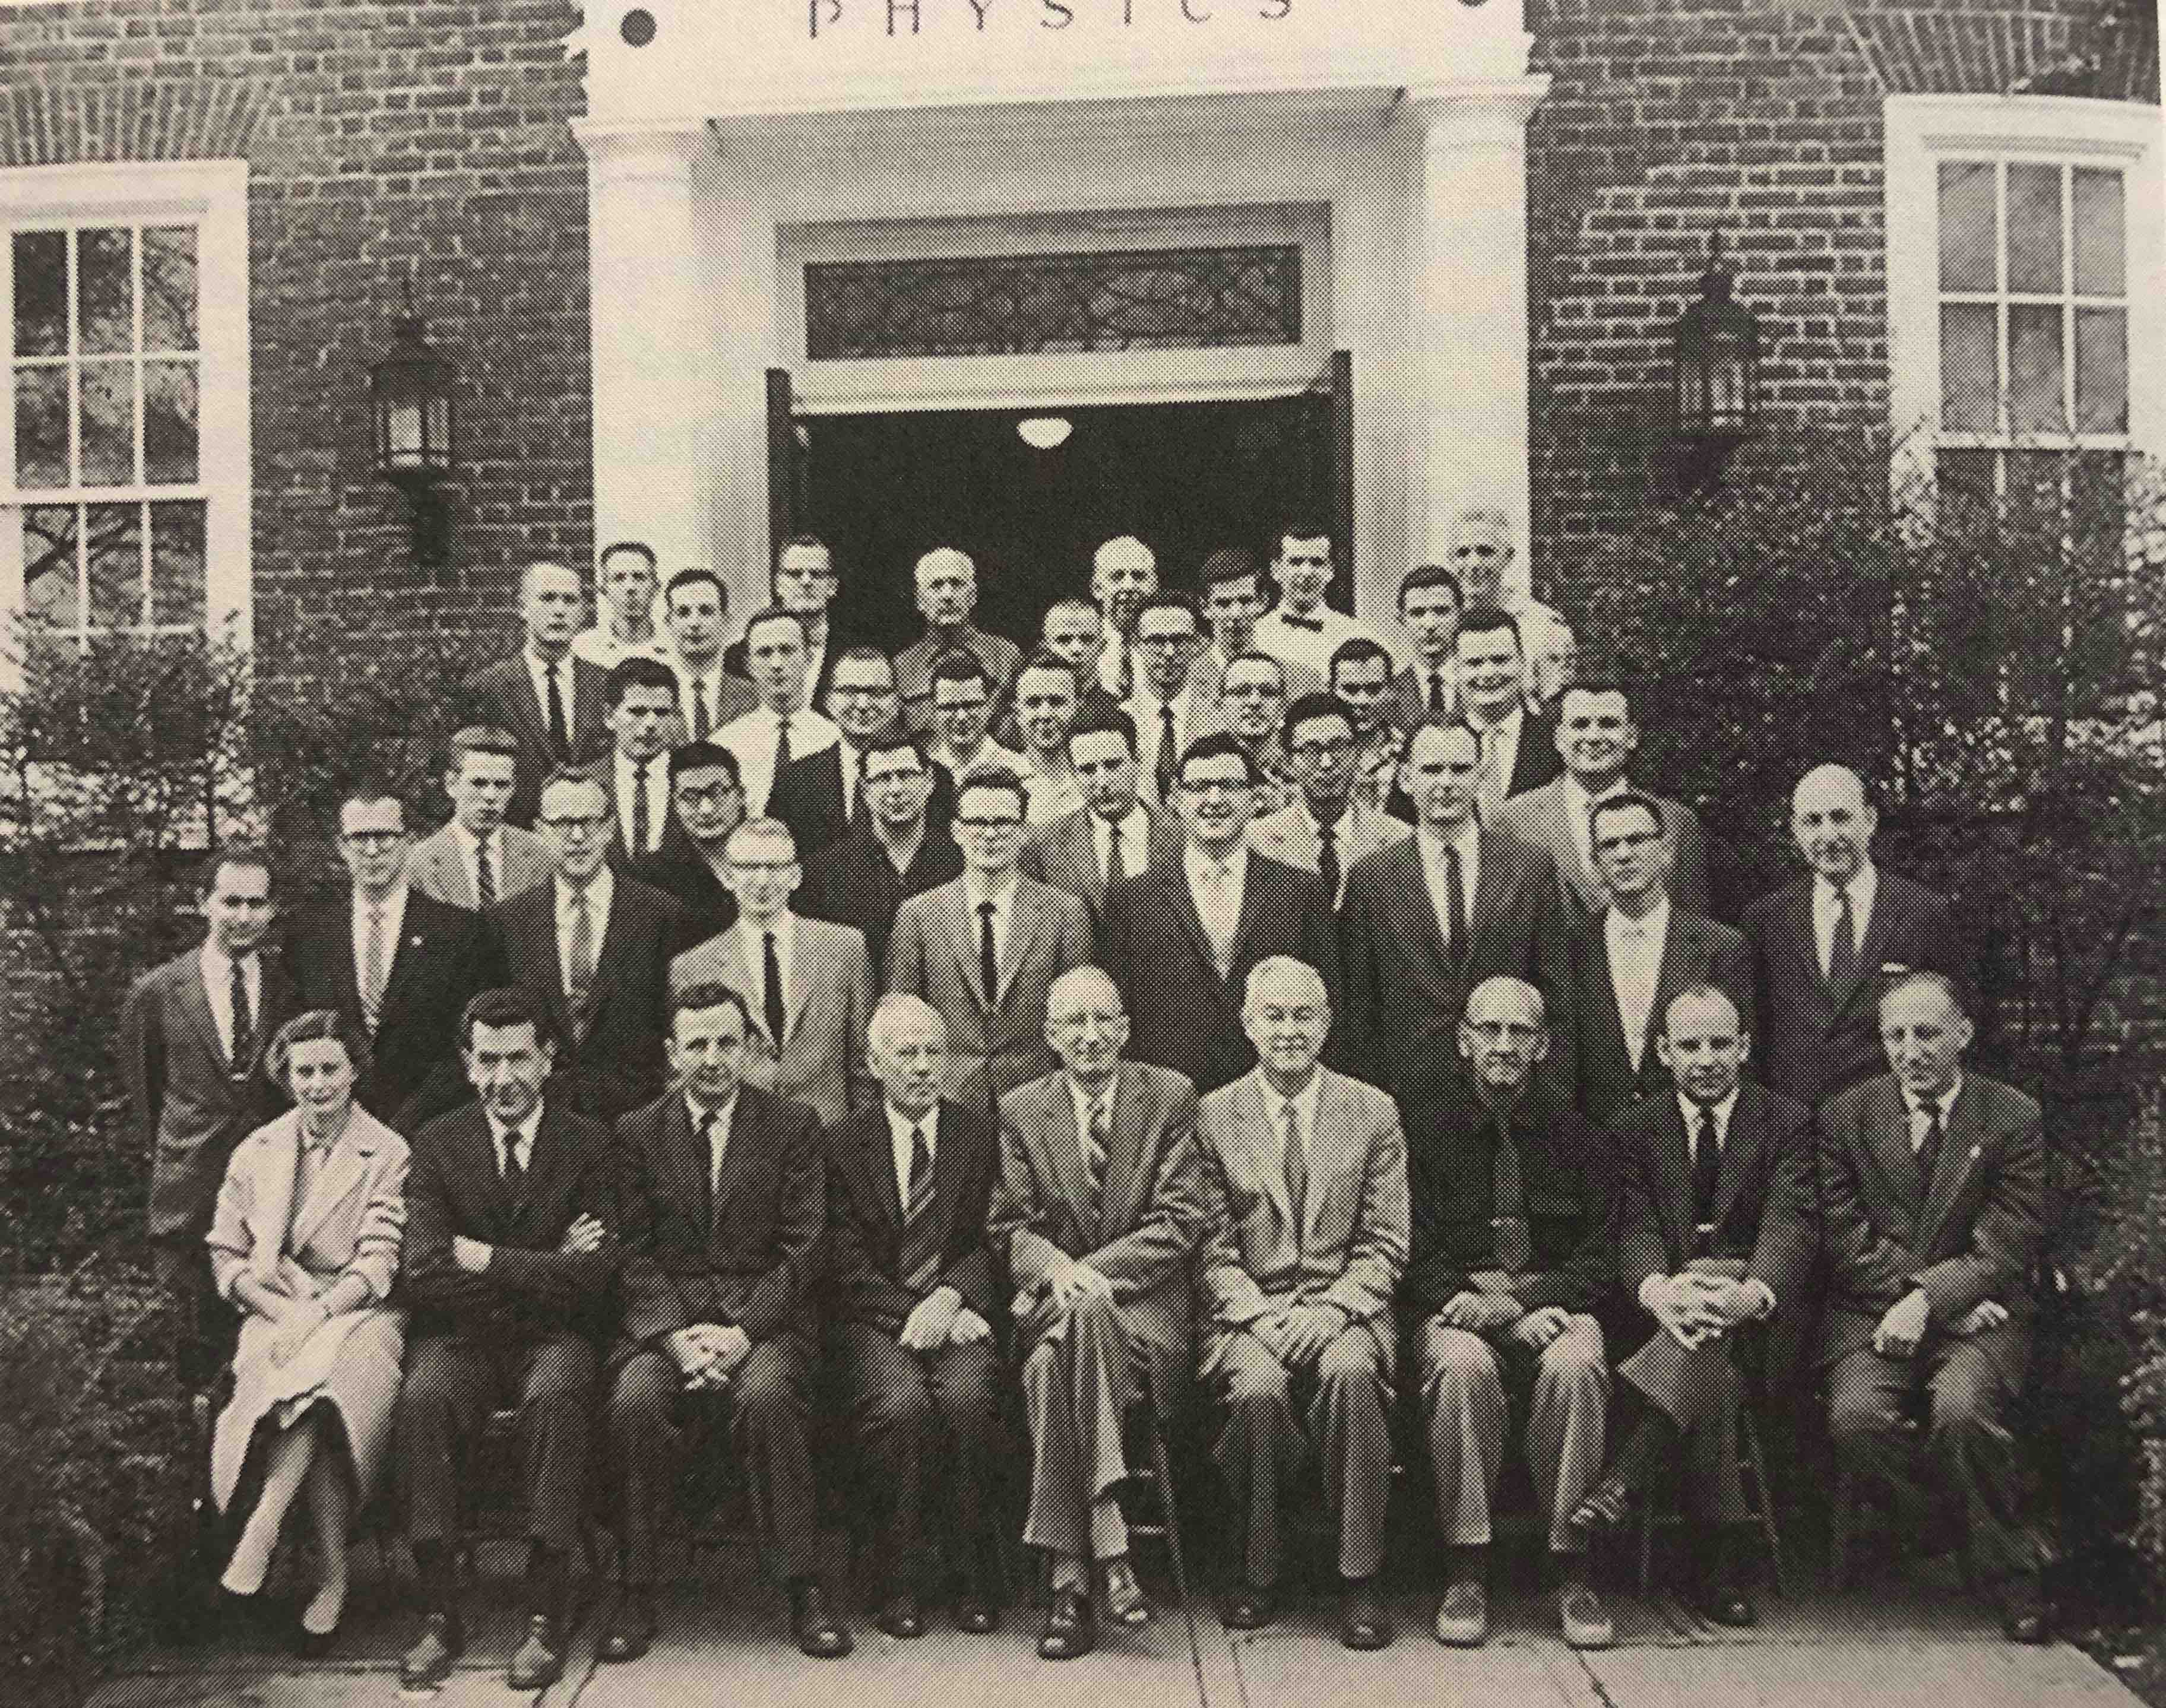 RutgersPhysics1958.jpeg